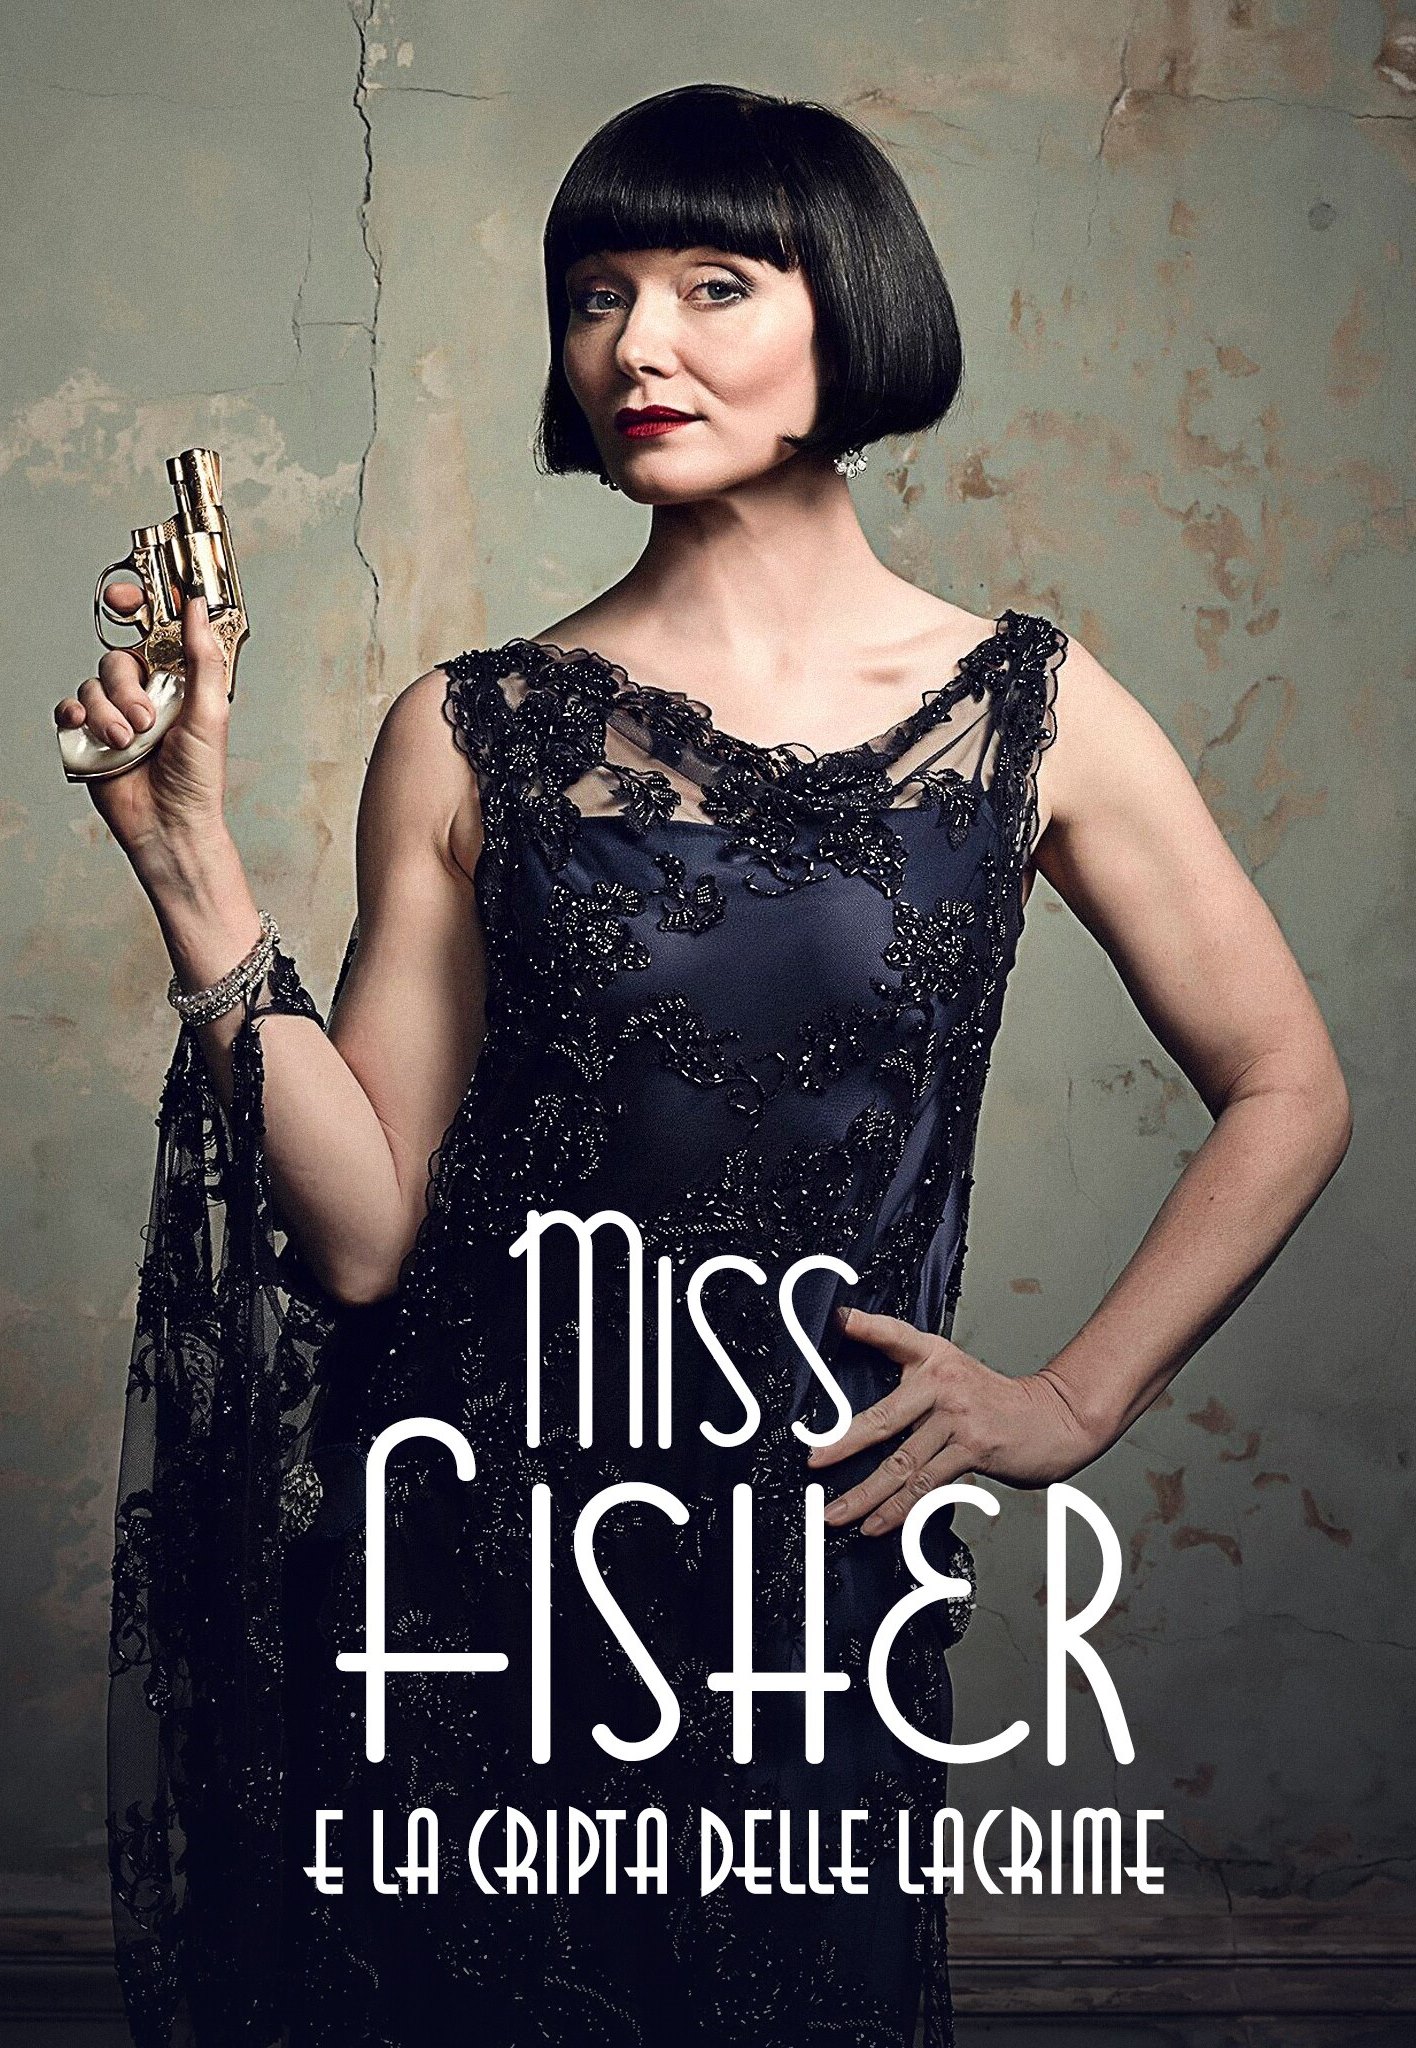 Miss Fisher e la cripta delle lacrime [HD] (2020)